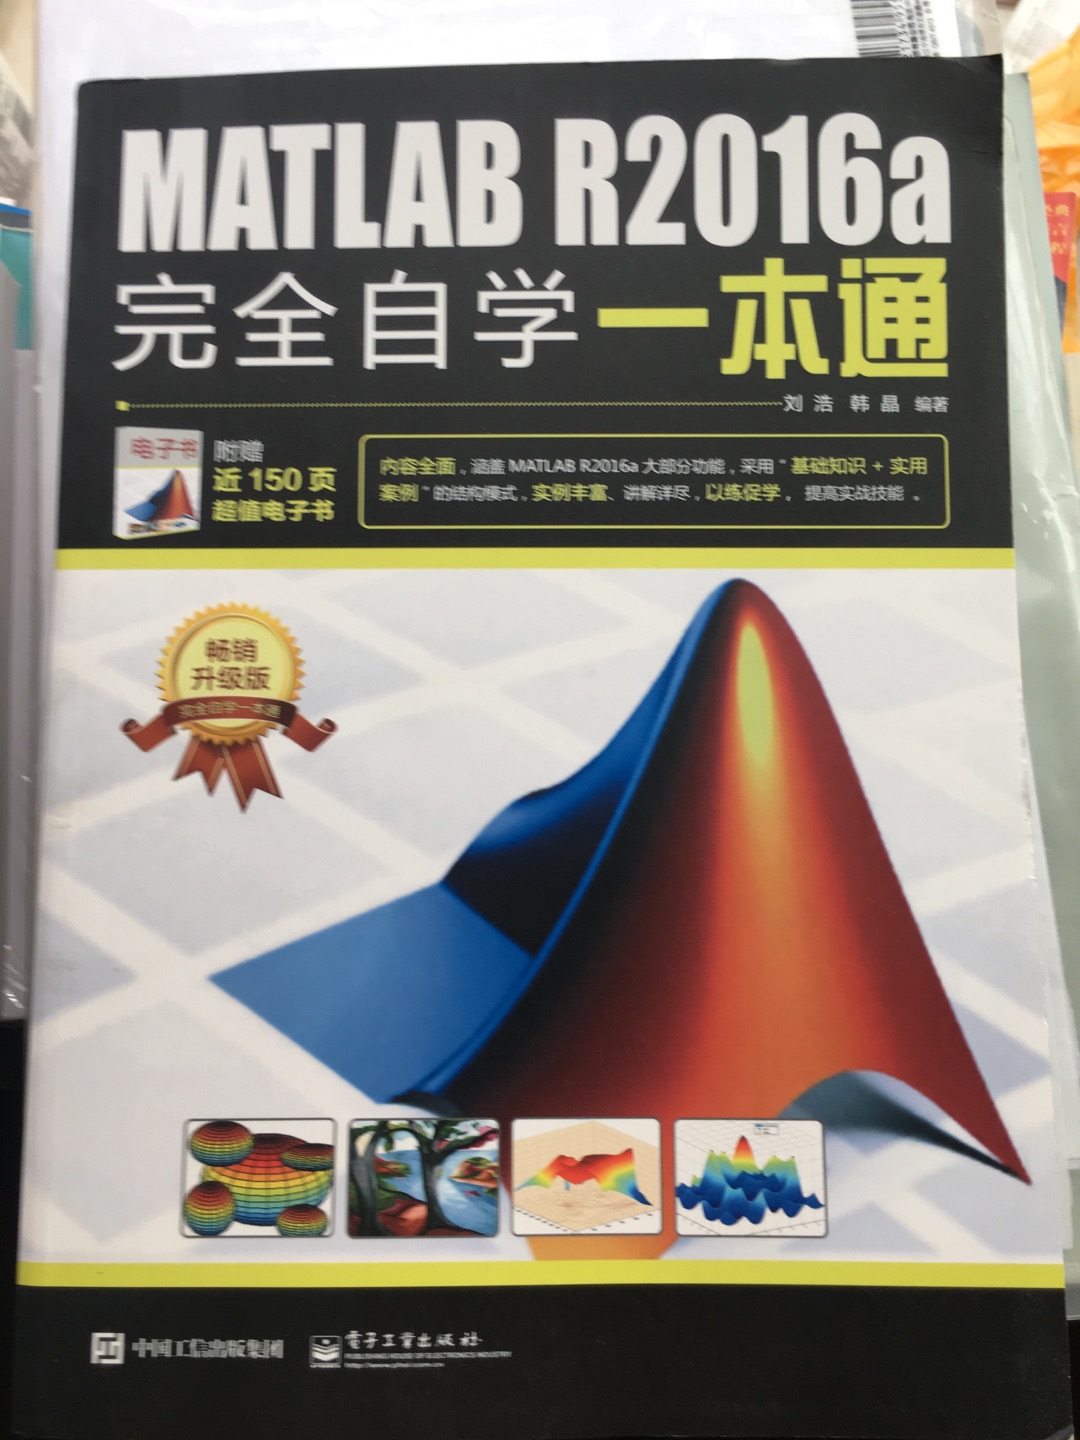 比较全面的一本Matlab书籍。